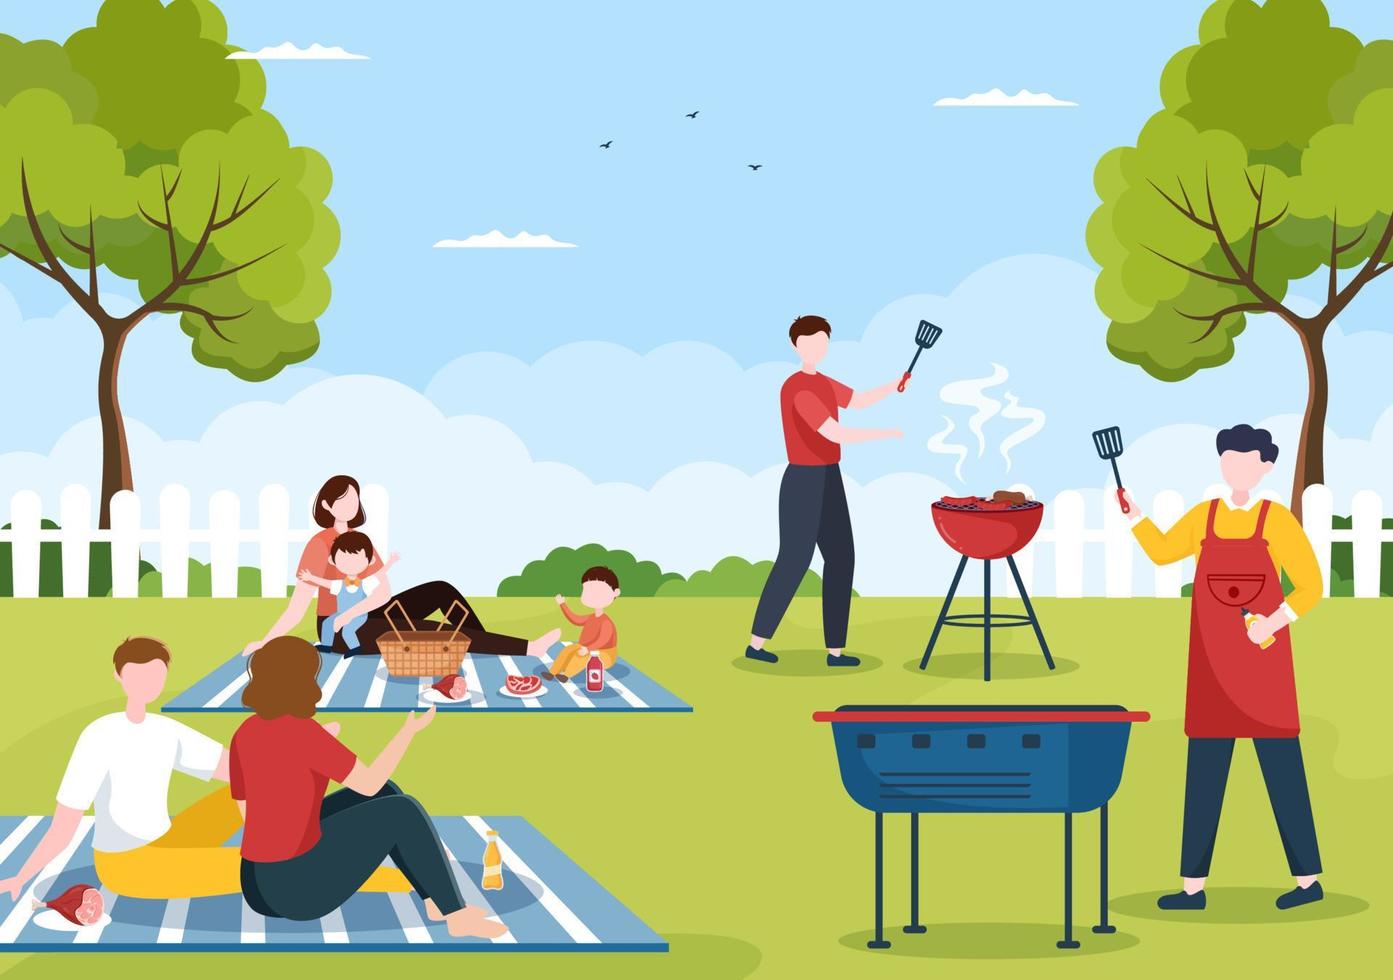 bbq of barbecue met steaks op grill, borden, worst, kip, groenten en mensen op picknick of feest in het park in platte cartoonillustratie vector